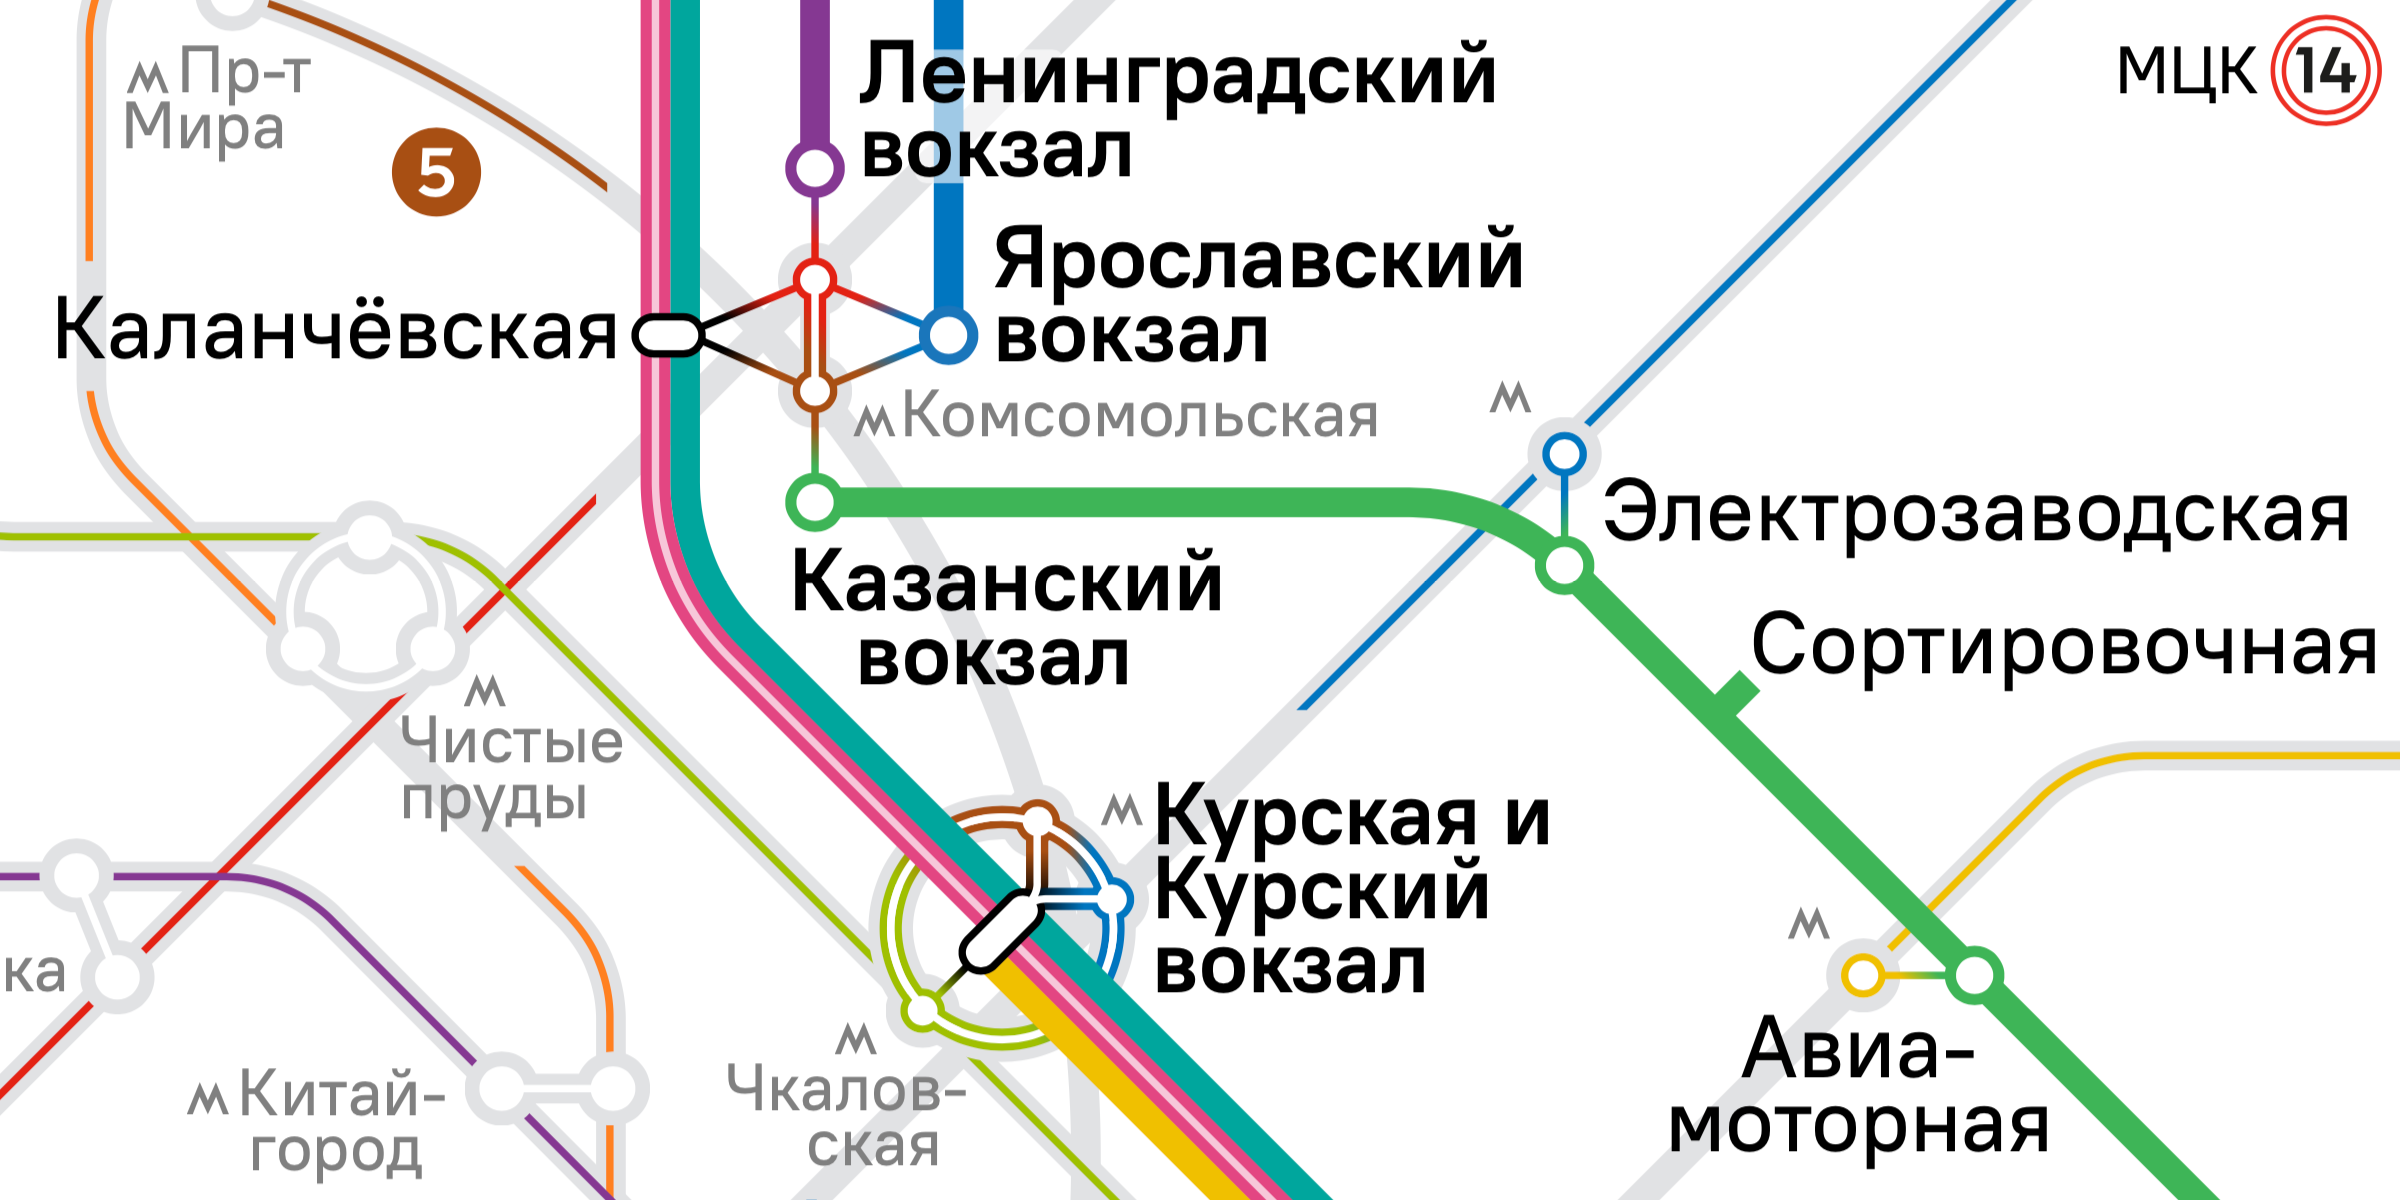 Официальная схема московских пригородных электричек ЦППК